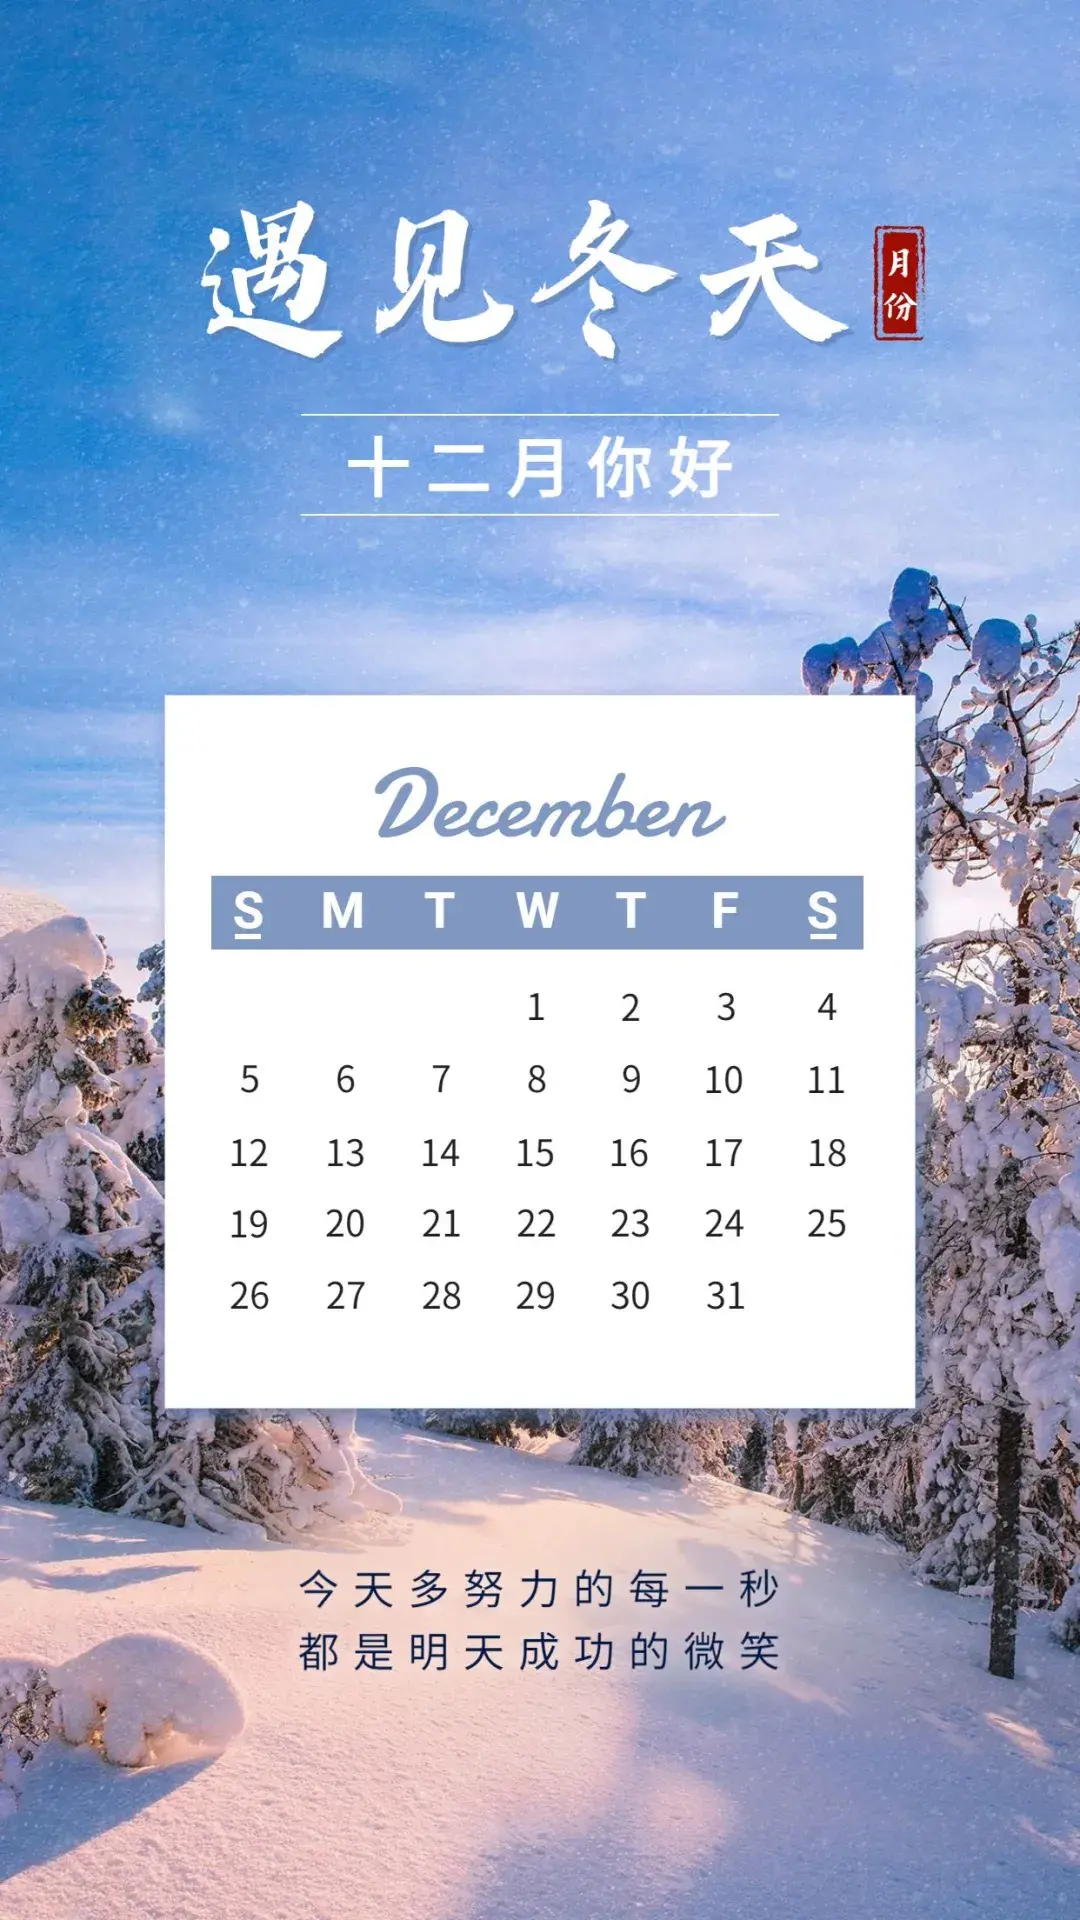 12月份营销日历上线!双十二,圣诞,跨年,年底冲kpi就在这里了!